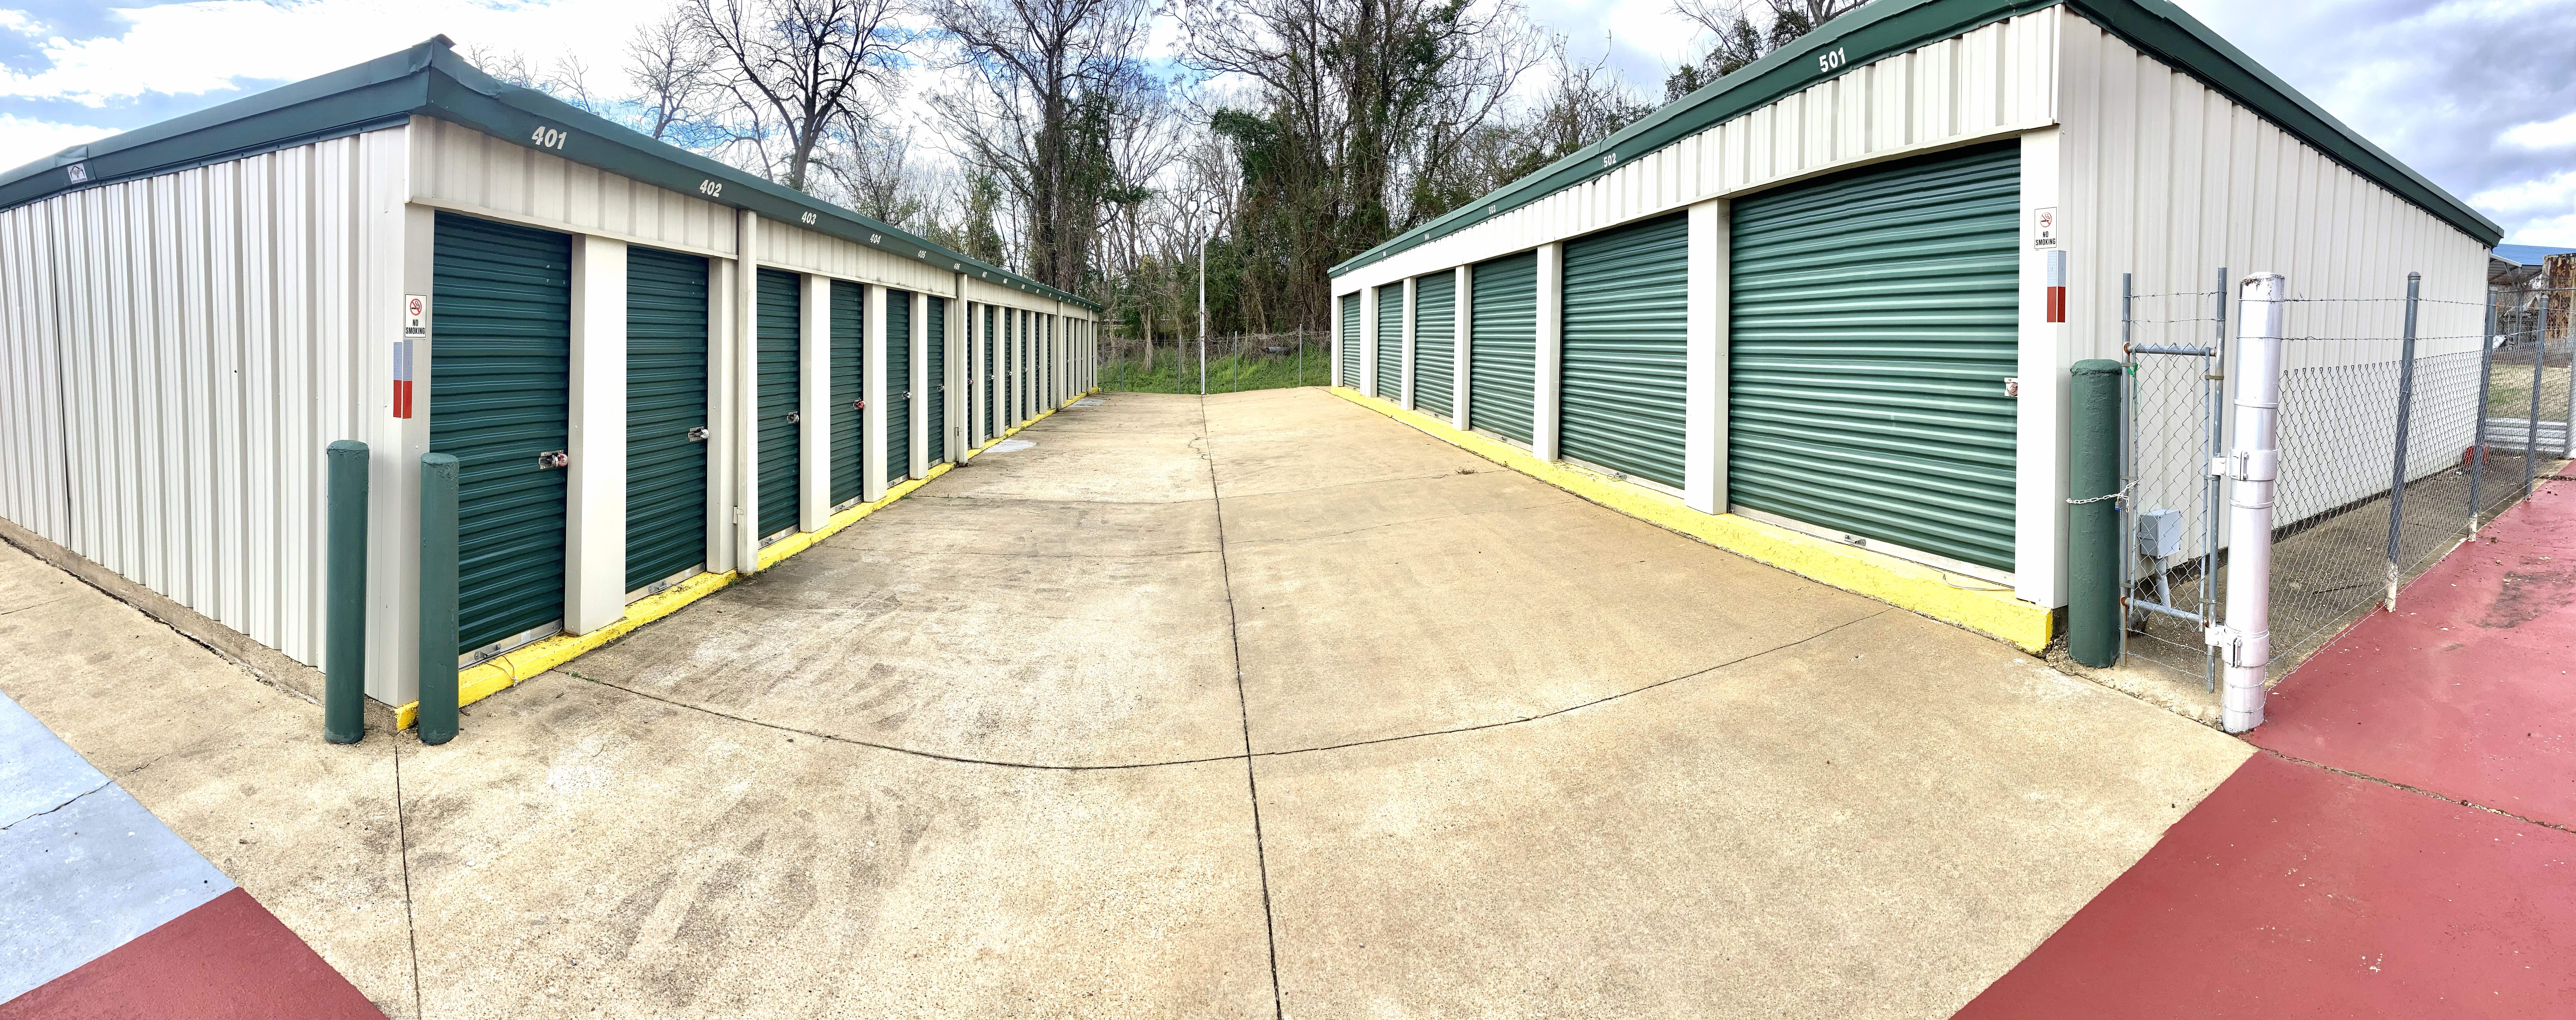 safemax storage greenville